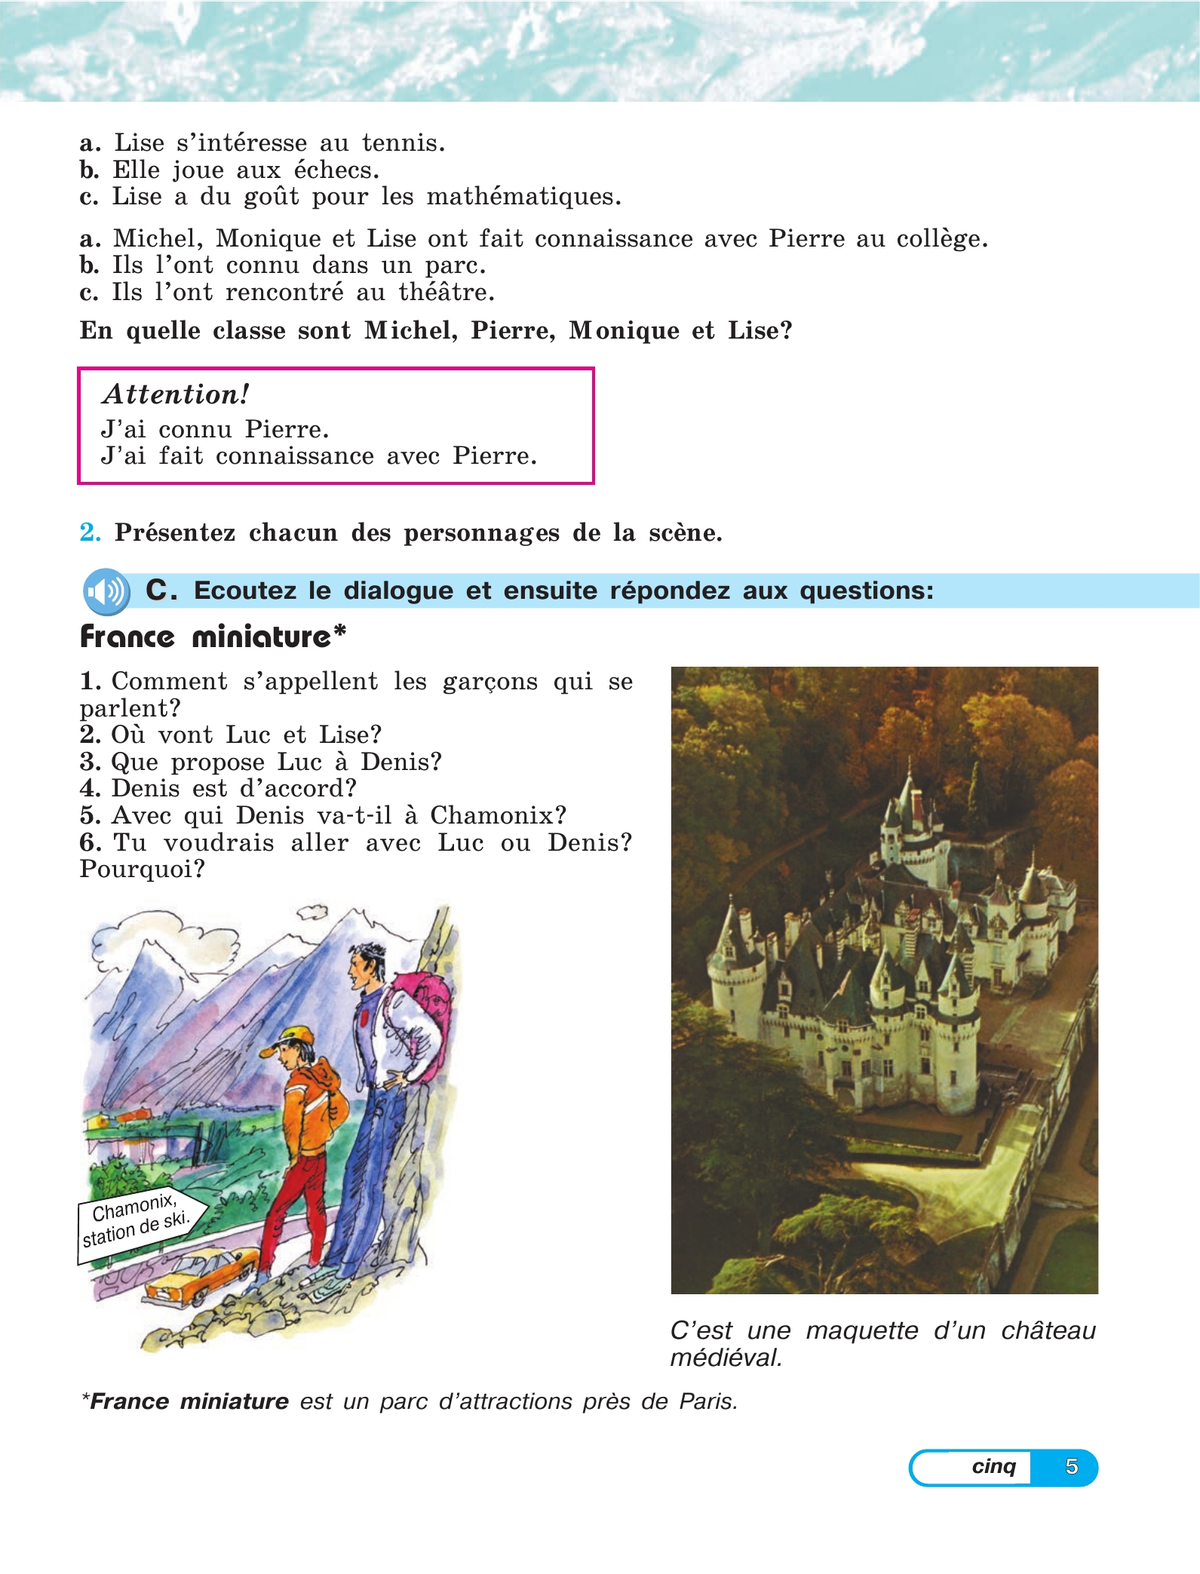 Французский язык. 5 класс. Углублённый уровень. Учебник. В 2 ч. Часть 1 4